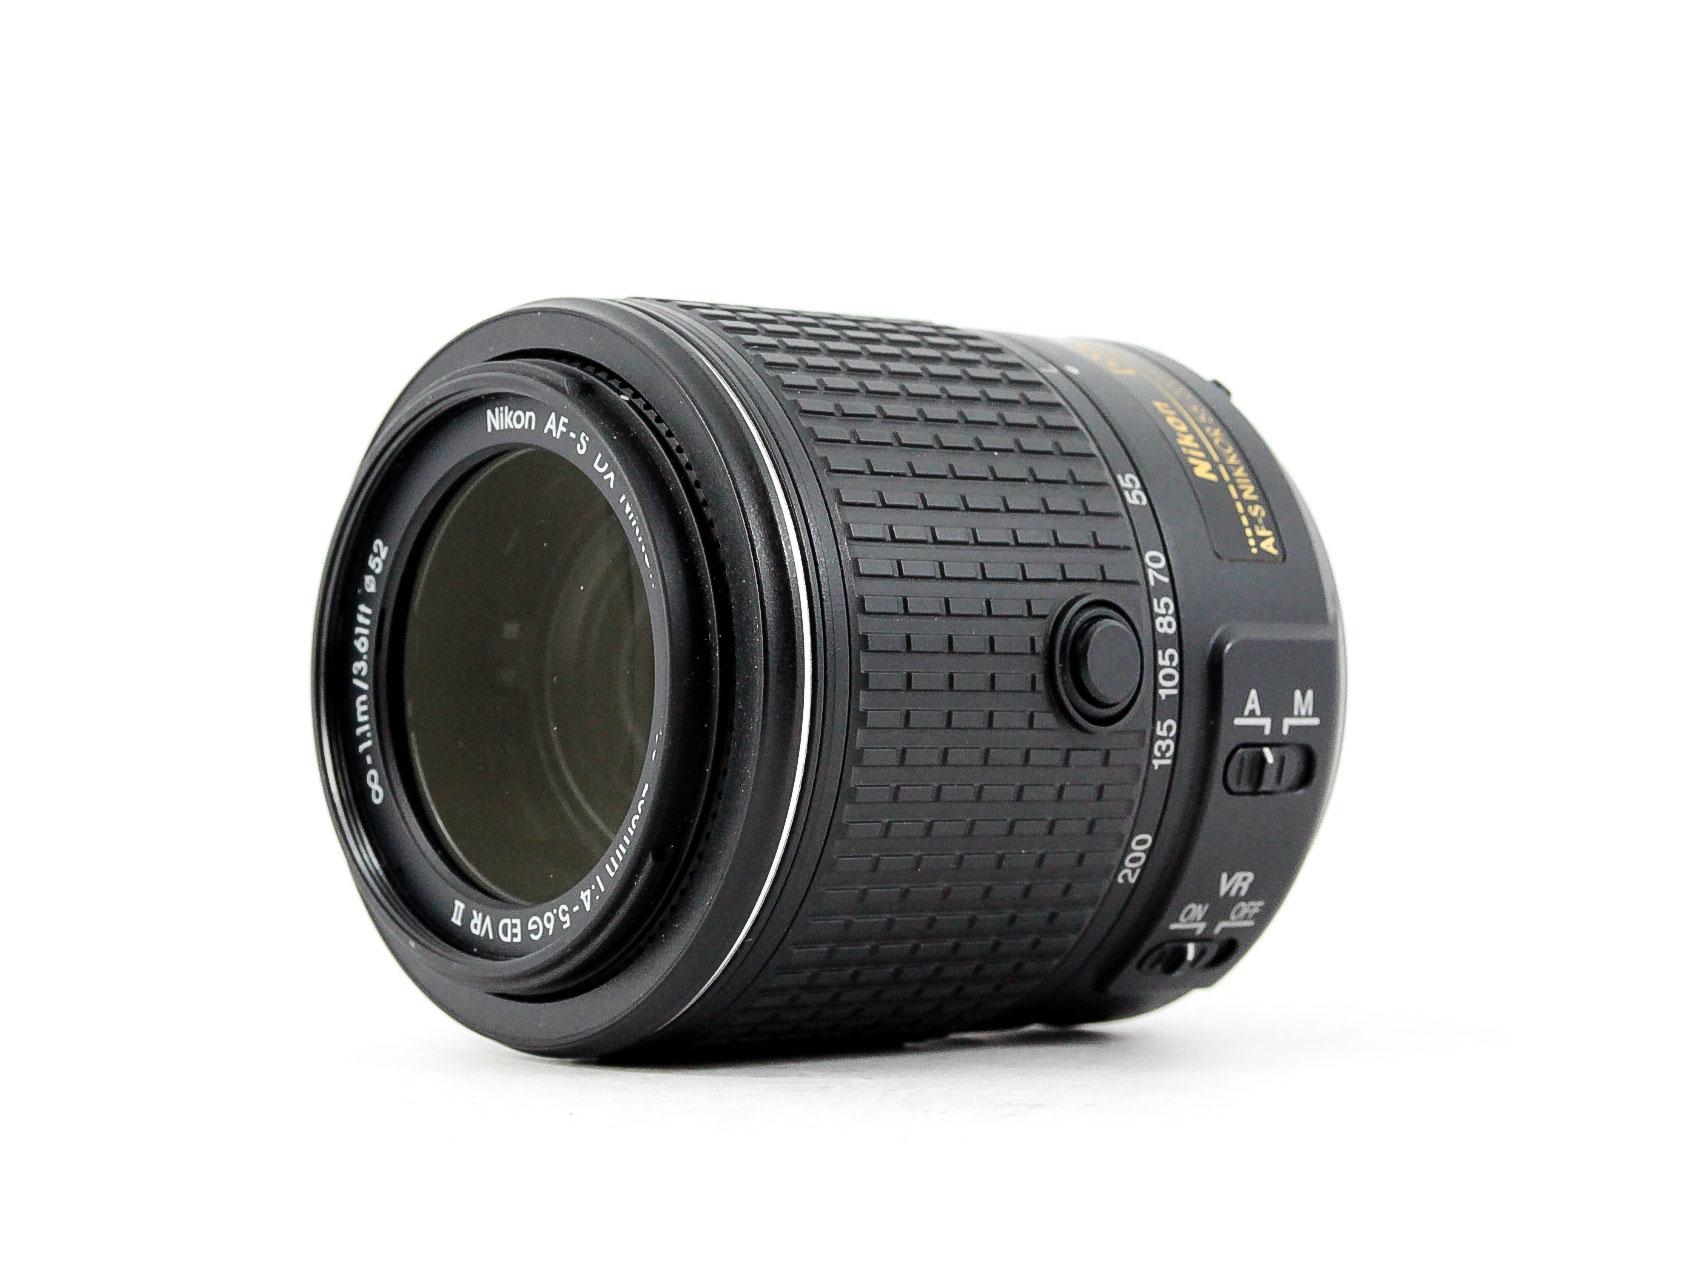 Nikon NIKKOR AF-S 55-200mm f/4-5.6G ED DX VR ll Lens - Lenses and Cameras